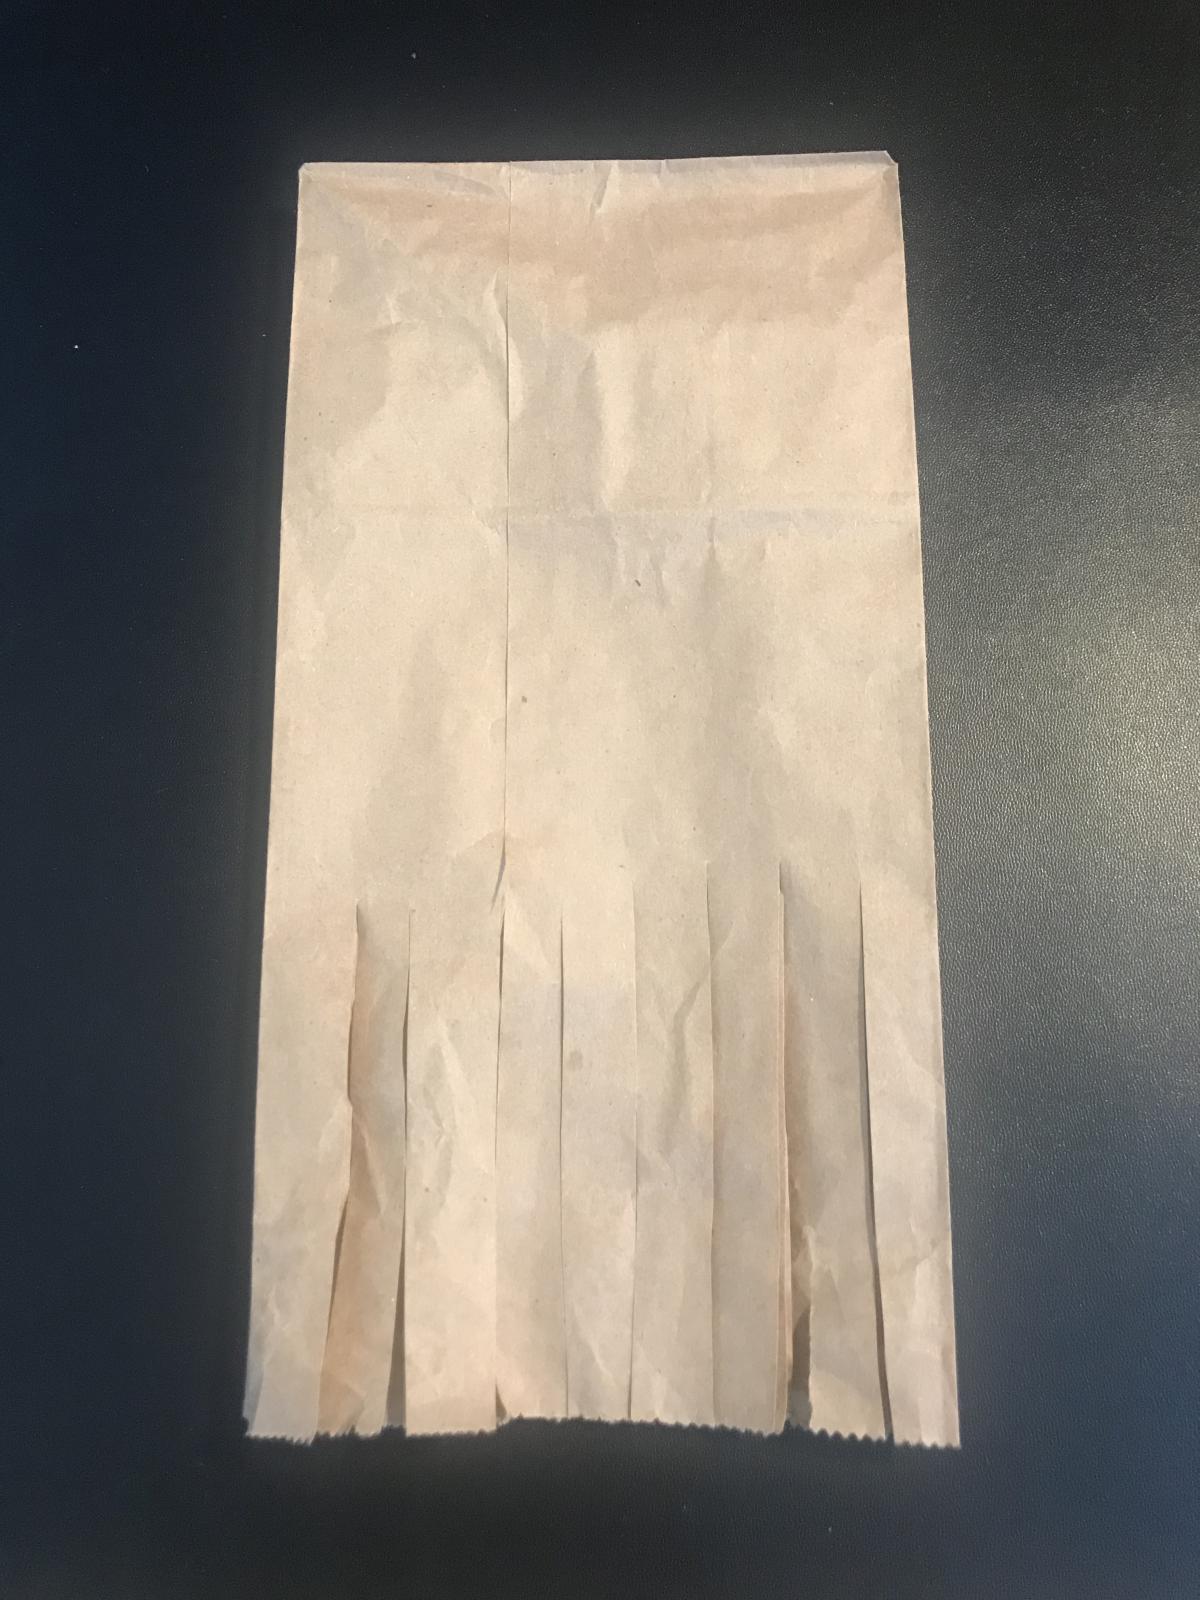 A paper bag